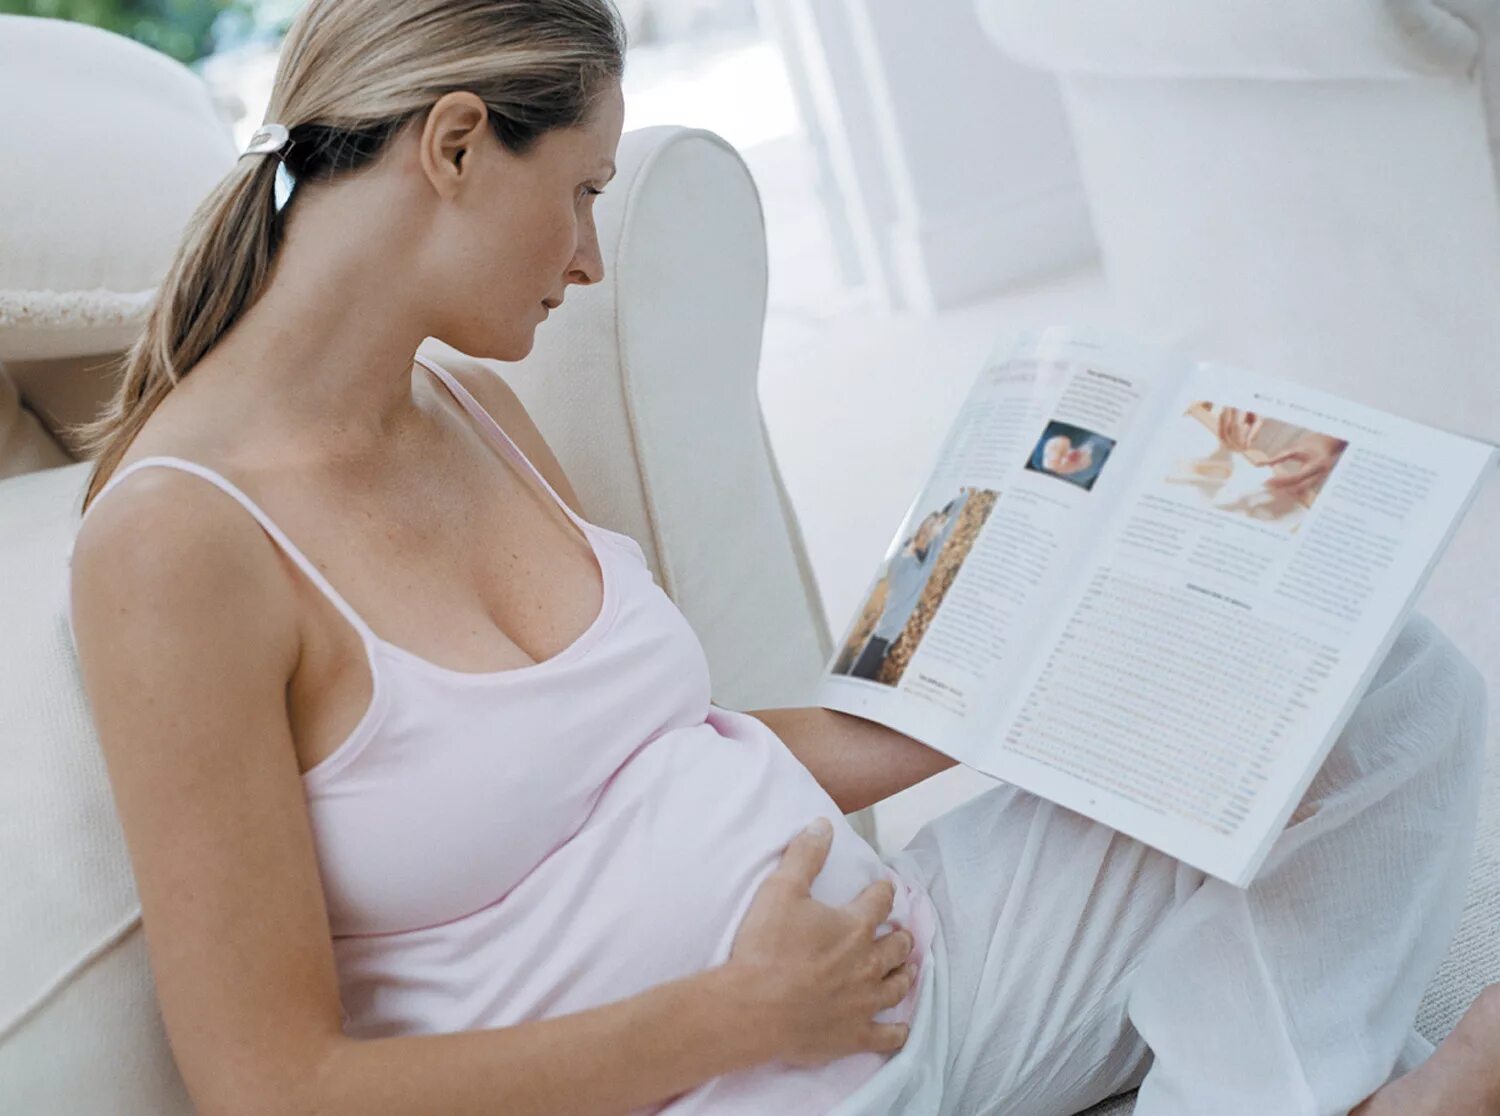 Роды и материнство. Подготовка к родам. Подготовка к беременности и родам. Подготовка женщины к родам. Психологическая подготовка к родам и материнству.